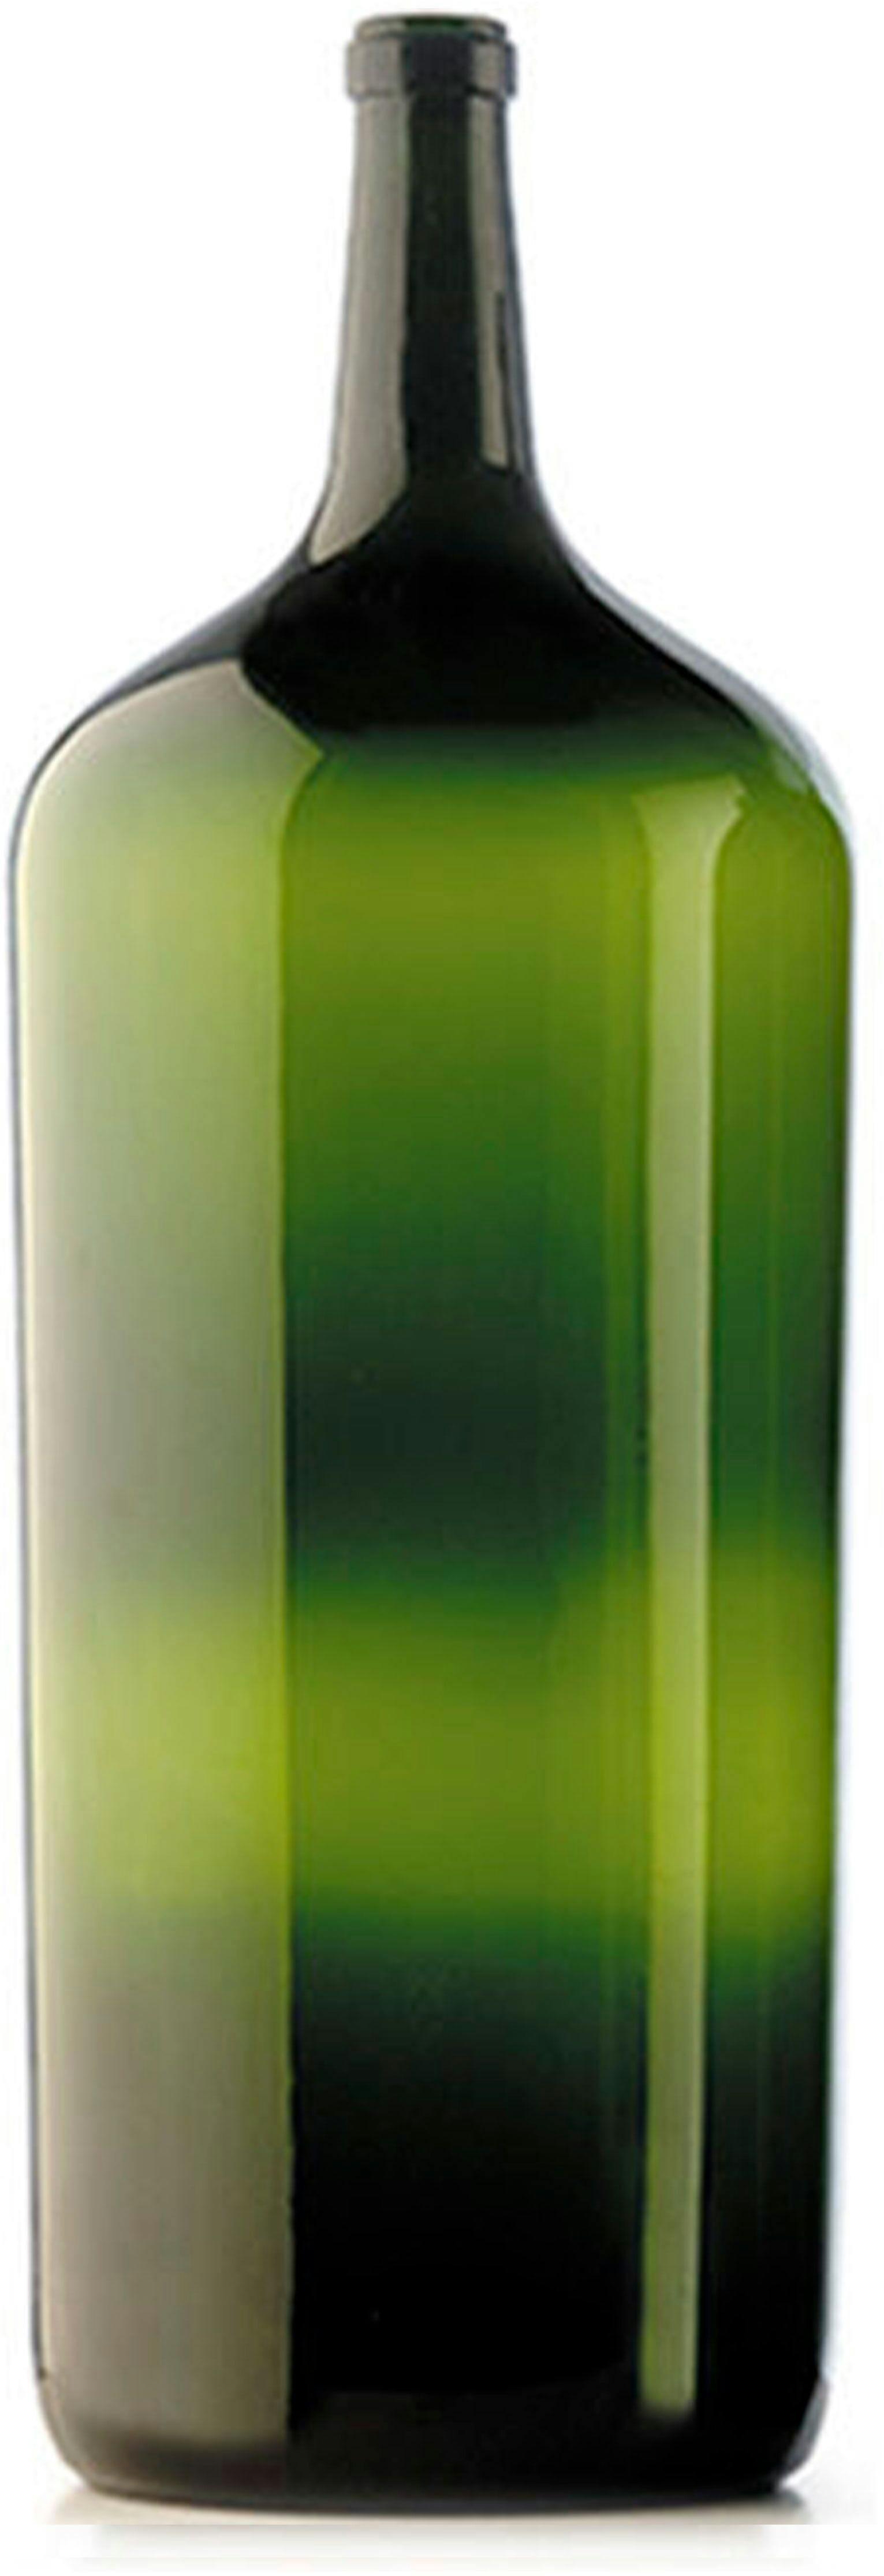 Bottle BORDOLESE  27000 ml BG-Cork